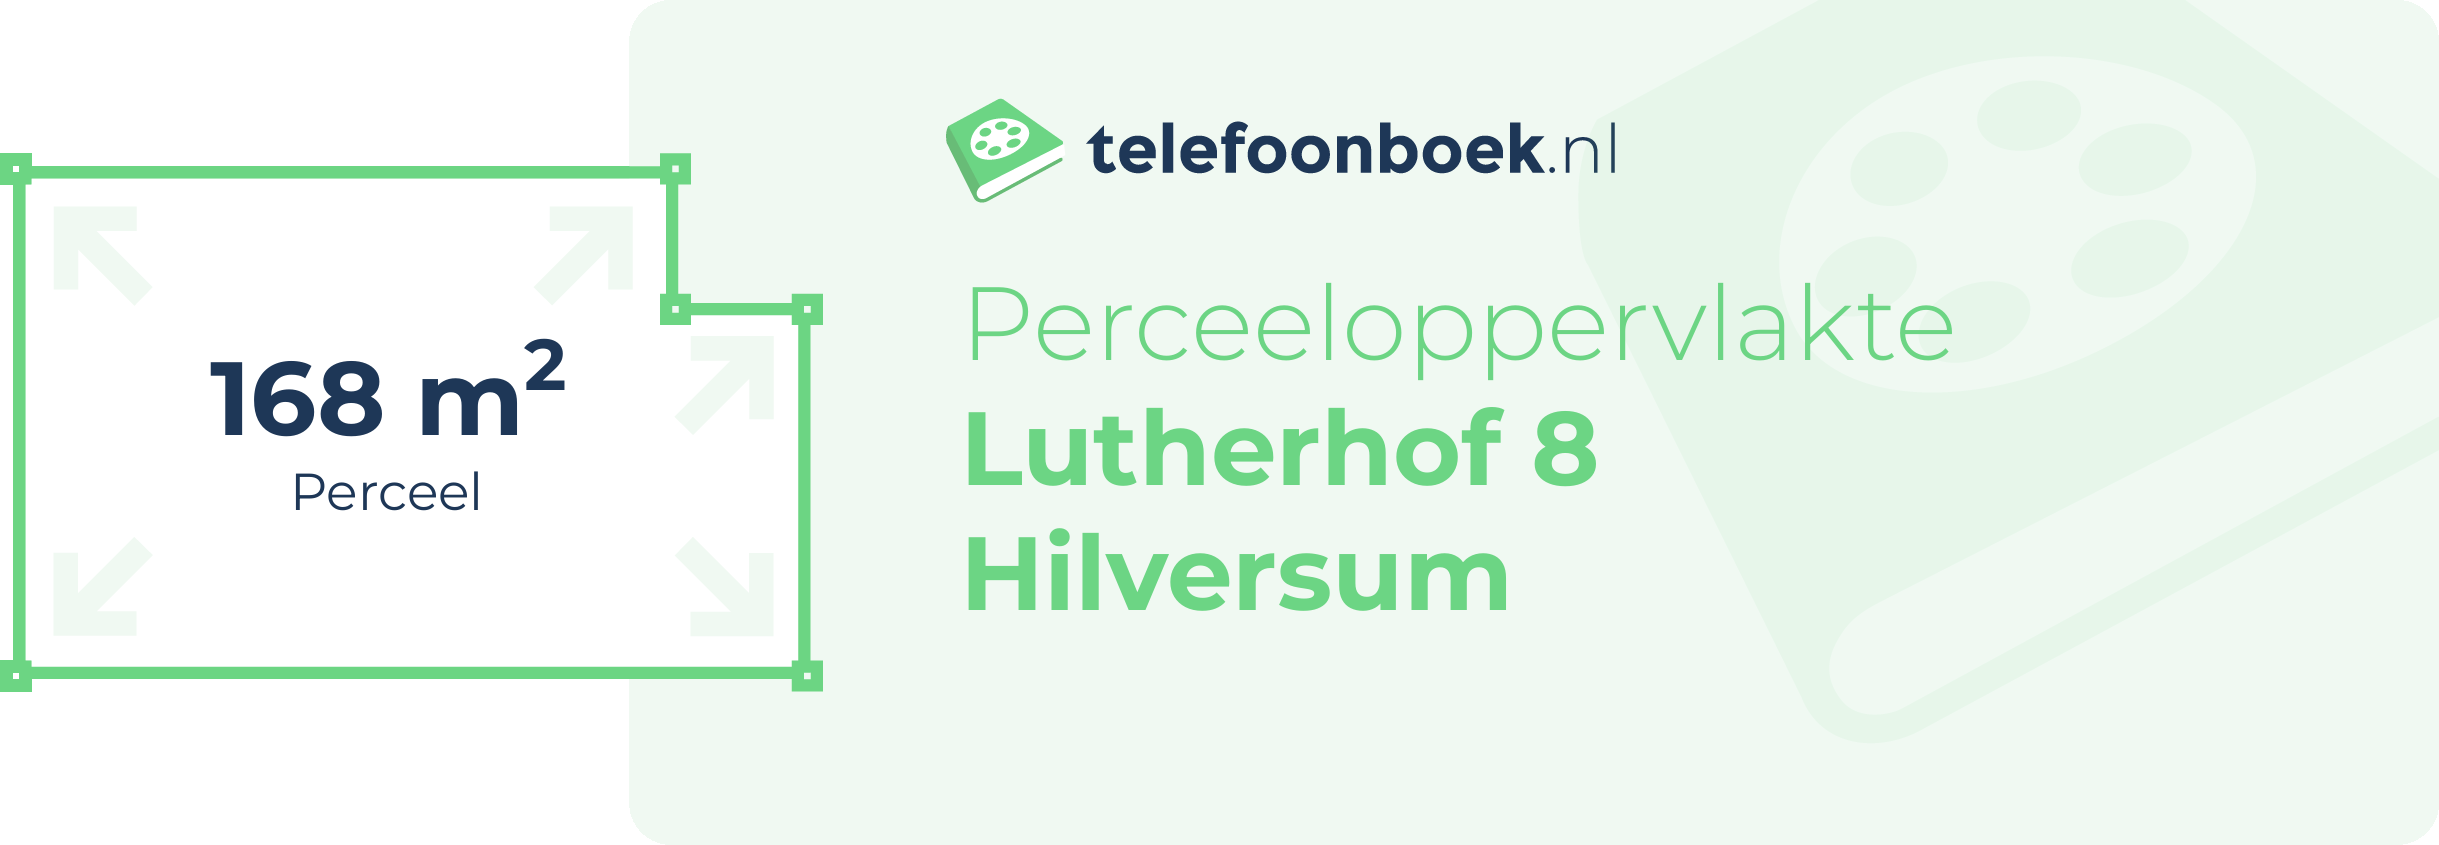 Perceeloppervlakte Lutherhof 8 Hilversum